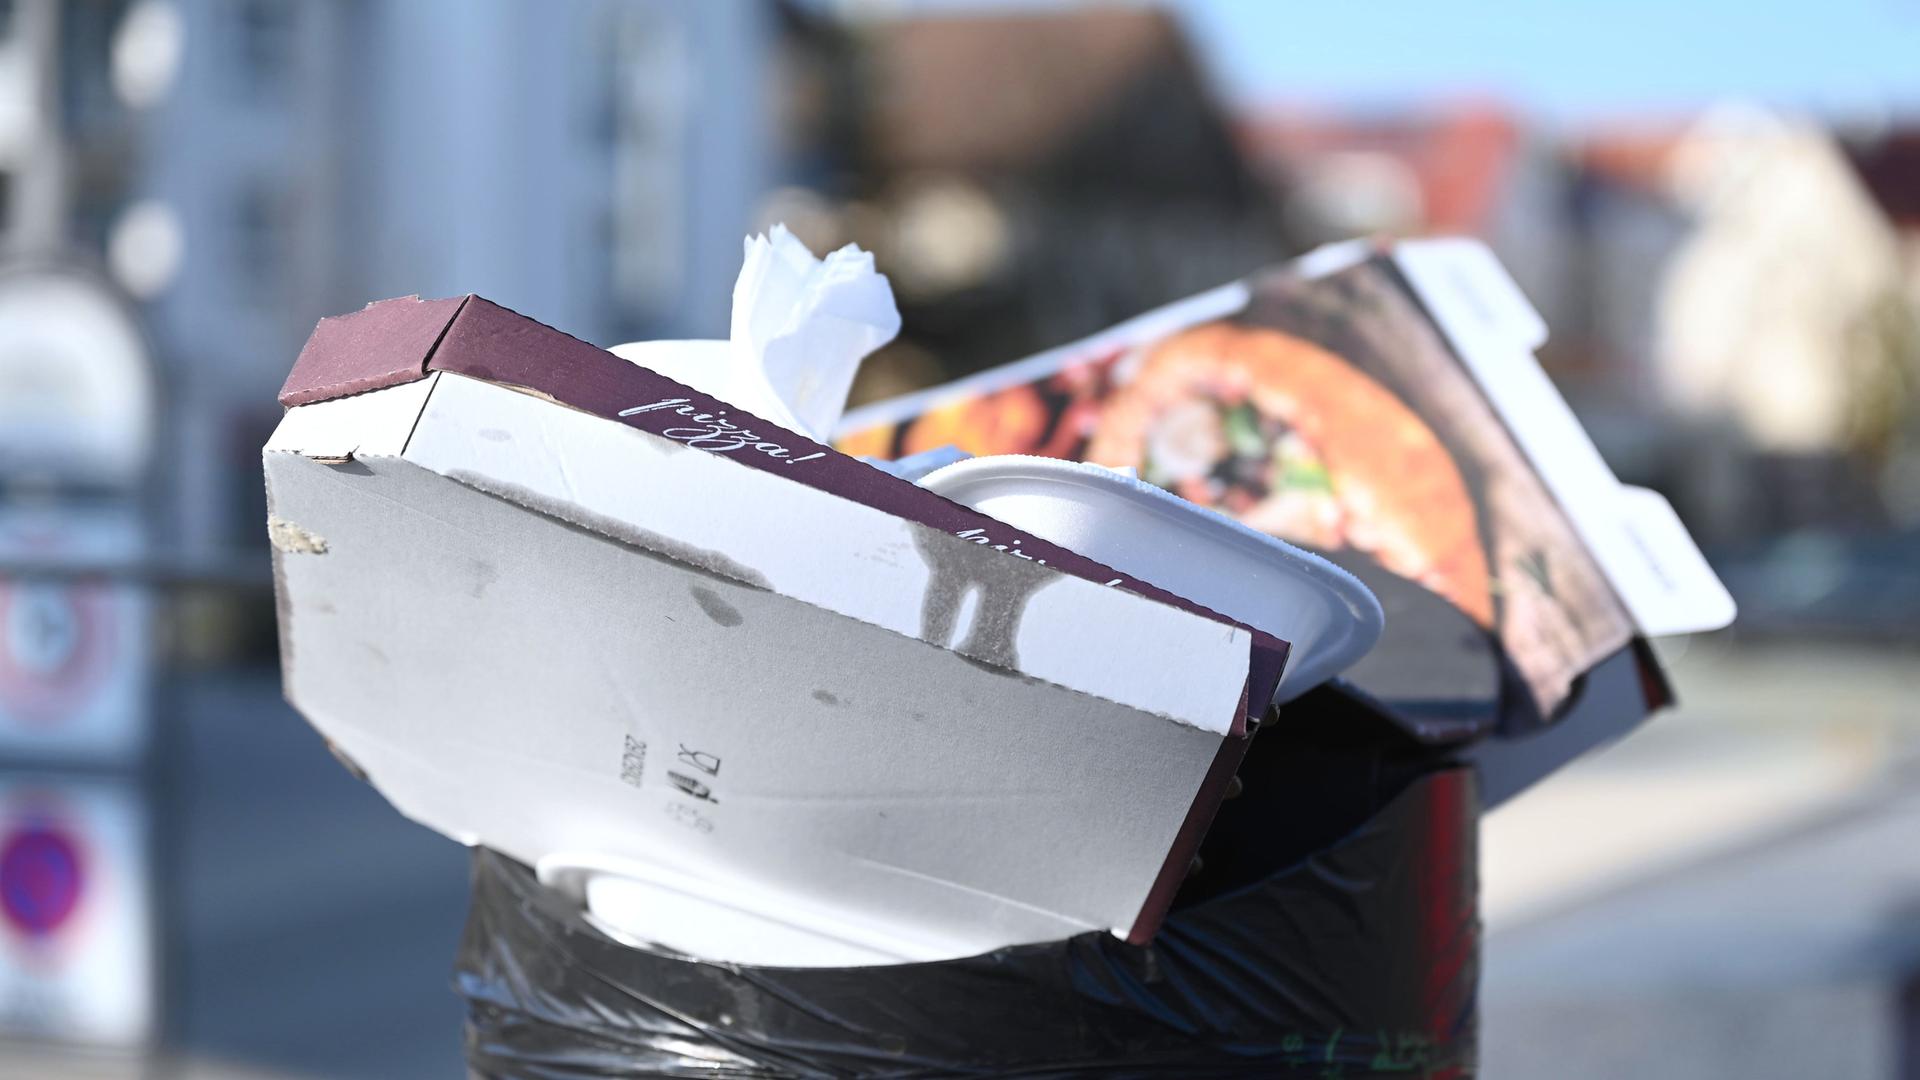 Pizzakartons und andere Essensverpackungen stecken in einem öffentlichen Mülleimer